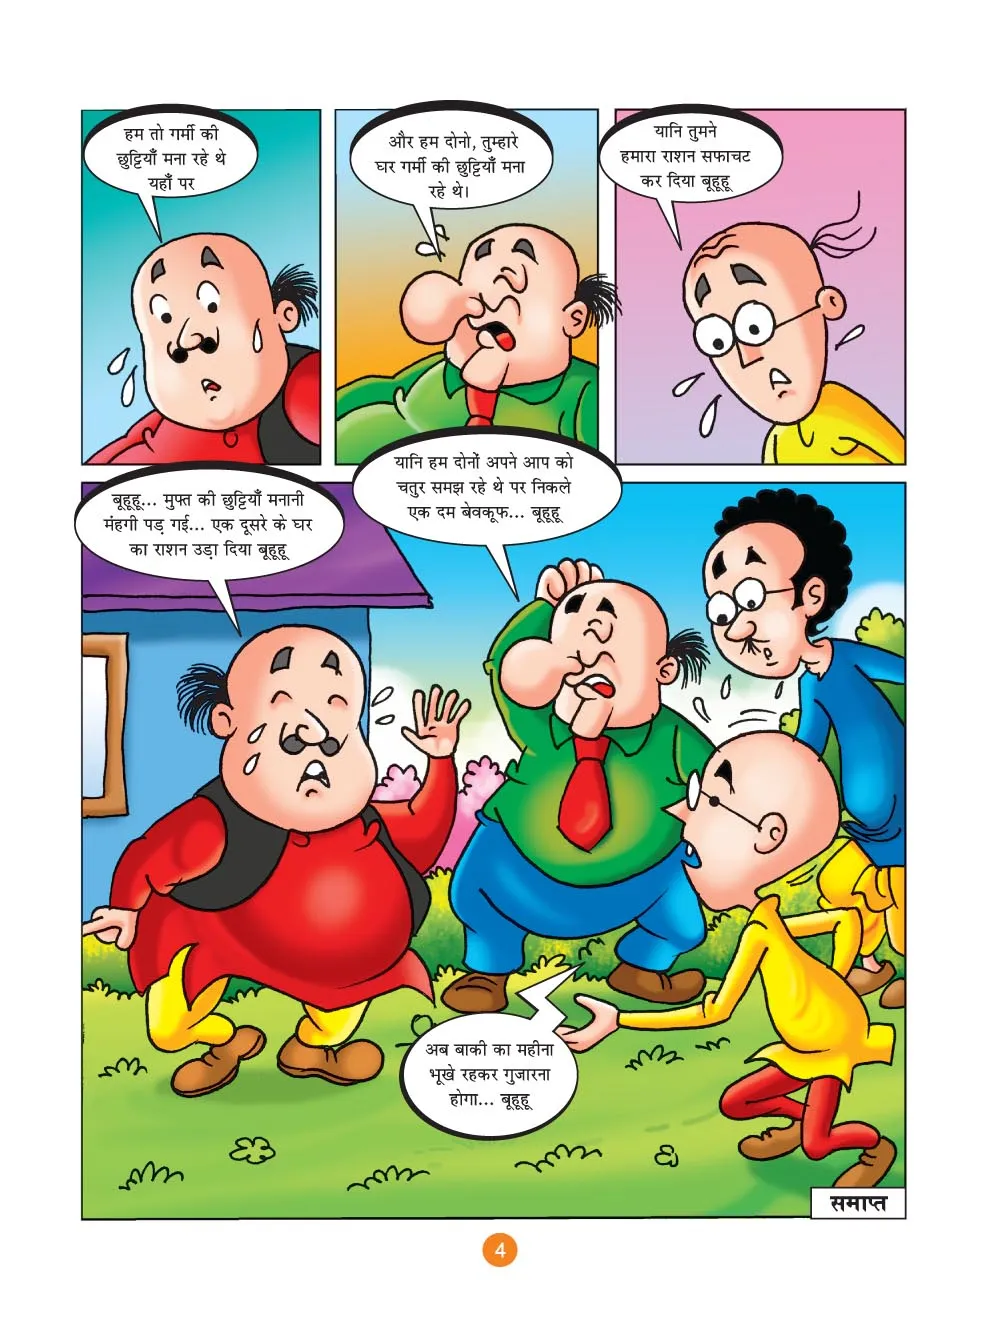 मोटू पतलू की कॉमिक्स- (Motu Patlu Ki Comics) गर्मियों की छुट्टियाँ :